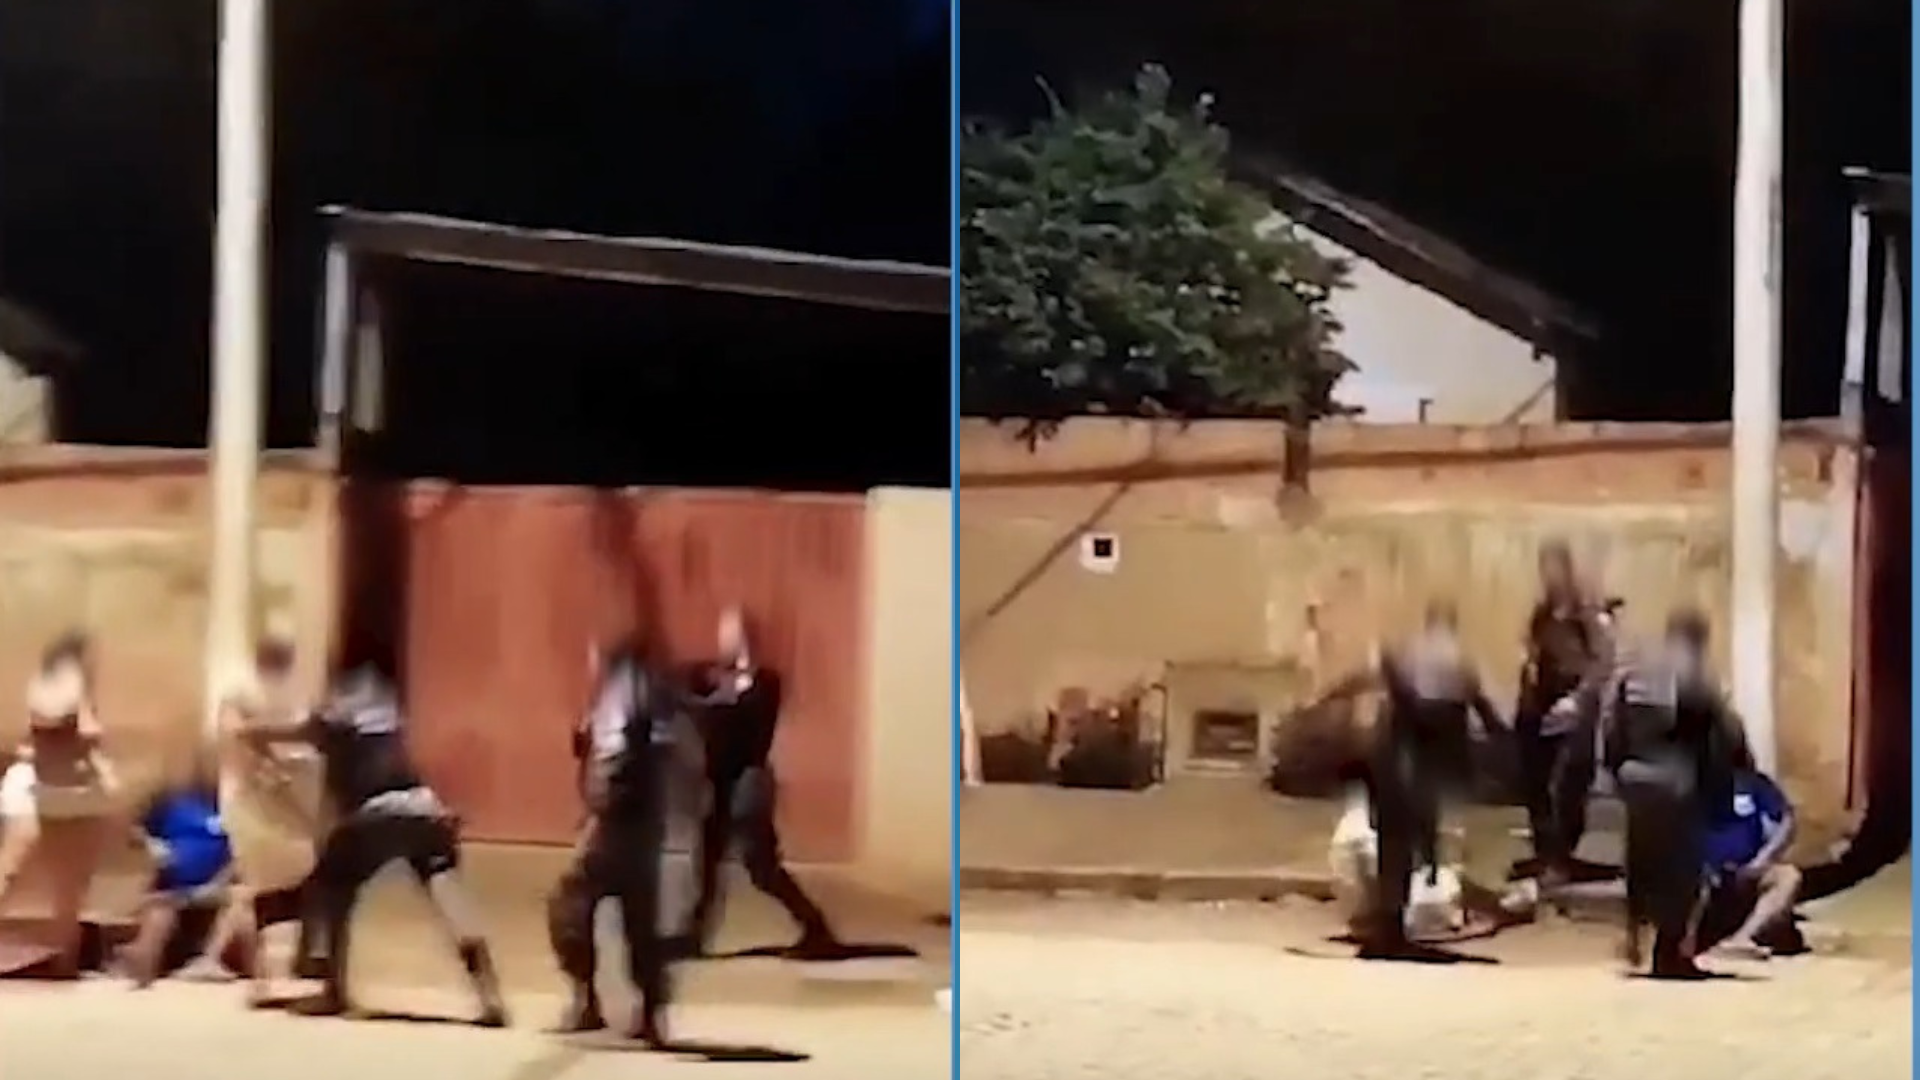 Imagens mostram quando policiais se aproximam de um grupo e desferem empurrões e chutes em um homem; ação ocorreu após jogo de futebol na região